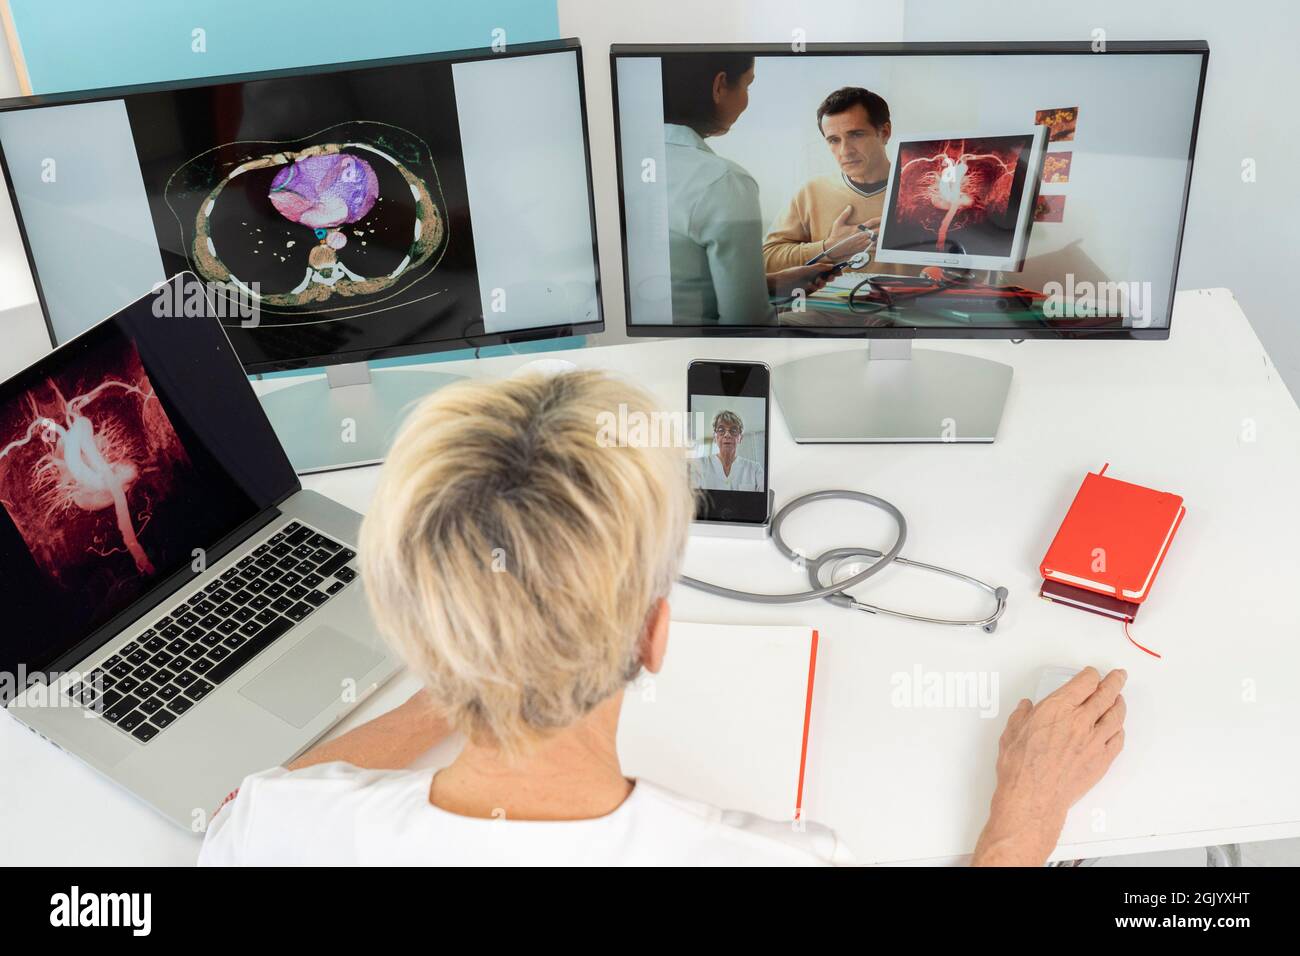 Téléconsultation entre deux médecins avec des images médicales des estomacs sur l'un des écrans. Banque D'Images